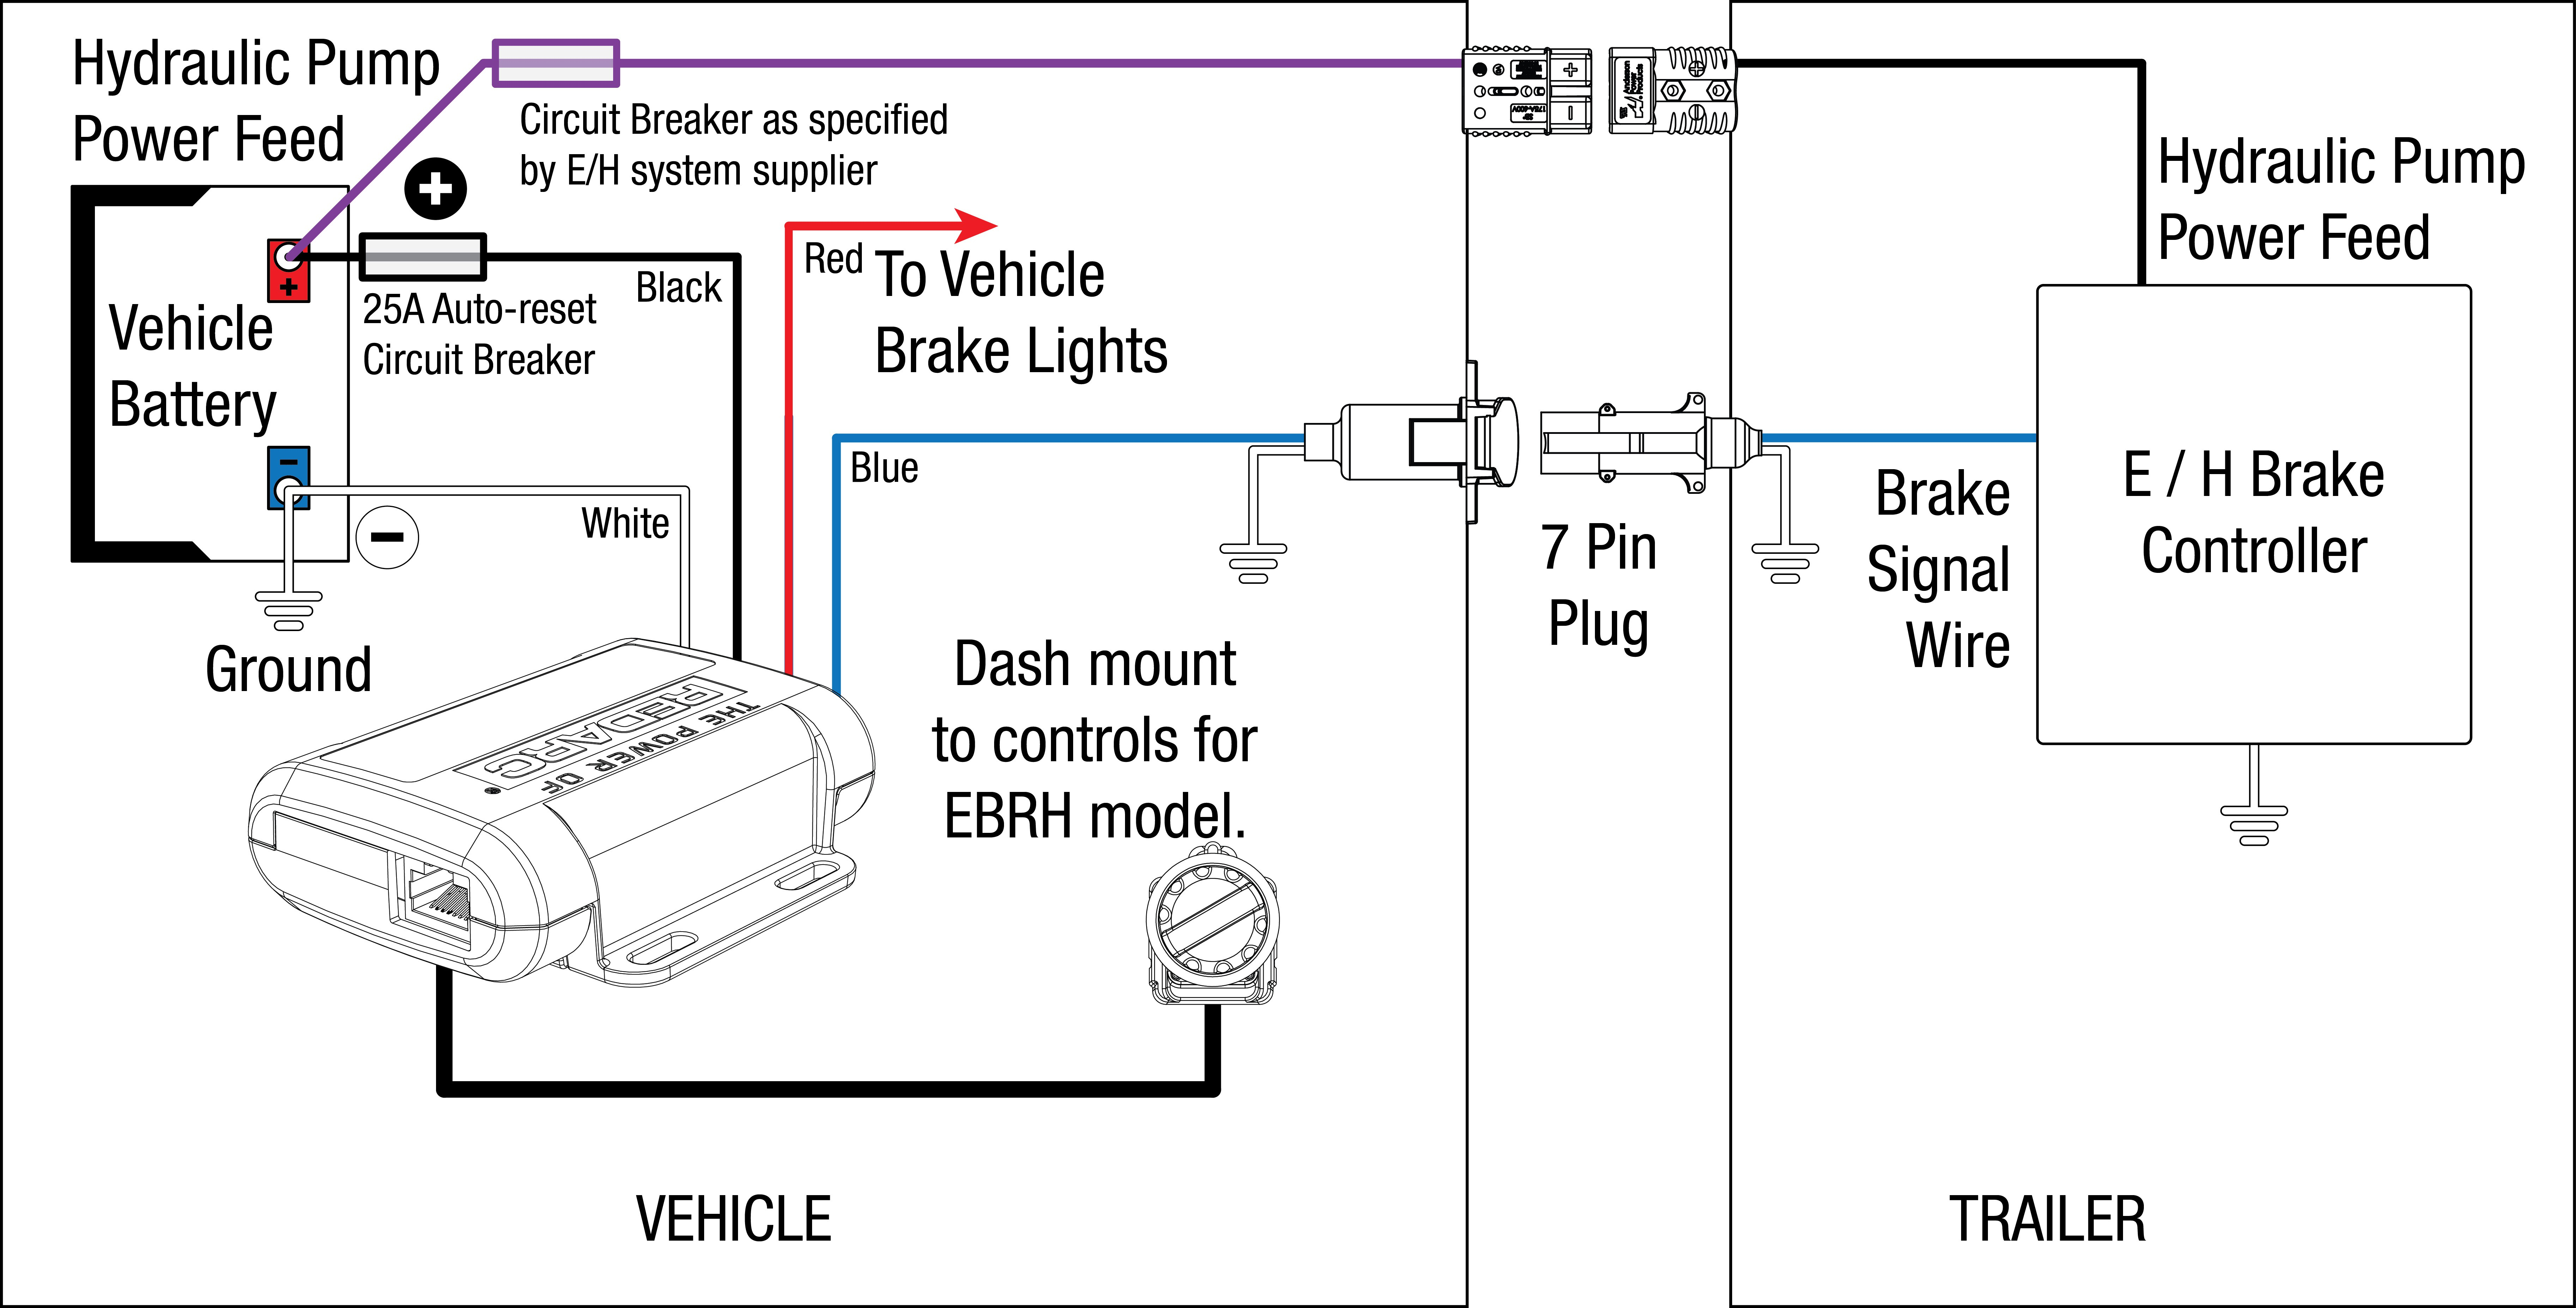 12 Volt Hydraulic Pump Wiring Diagram Wrg 8908 Monarch 12 Volt Hydraulic Pump Wiring Diagram